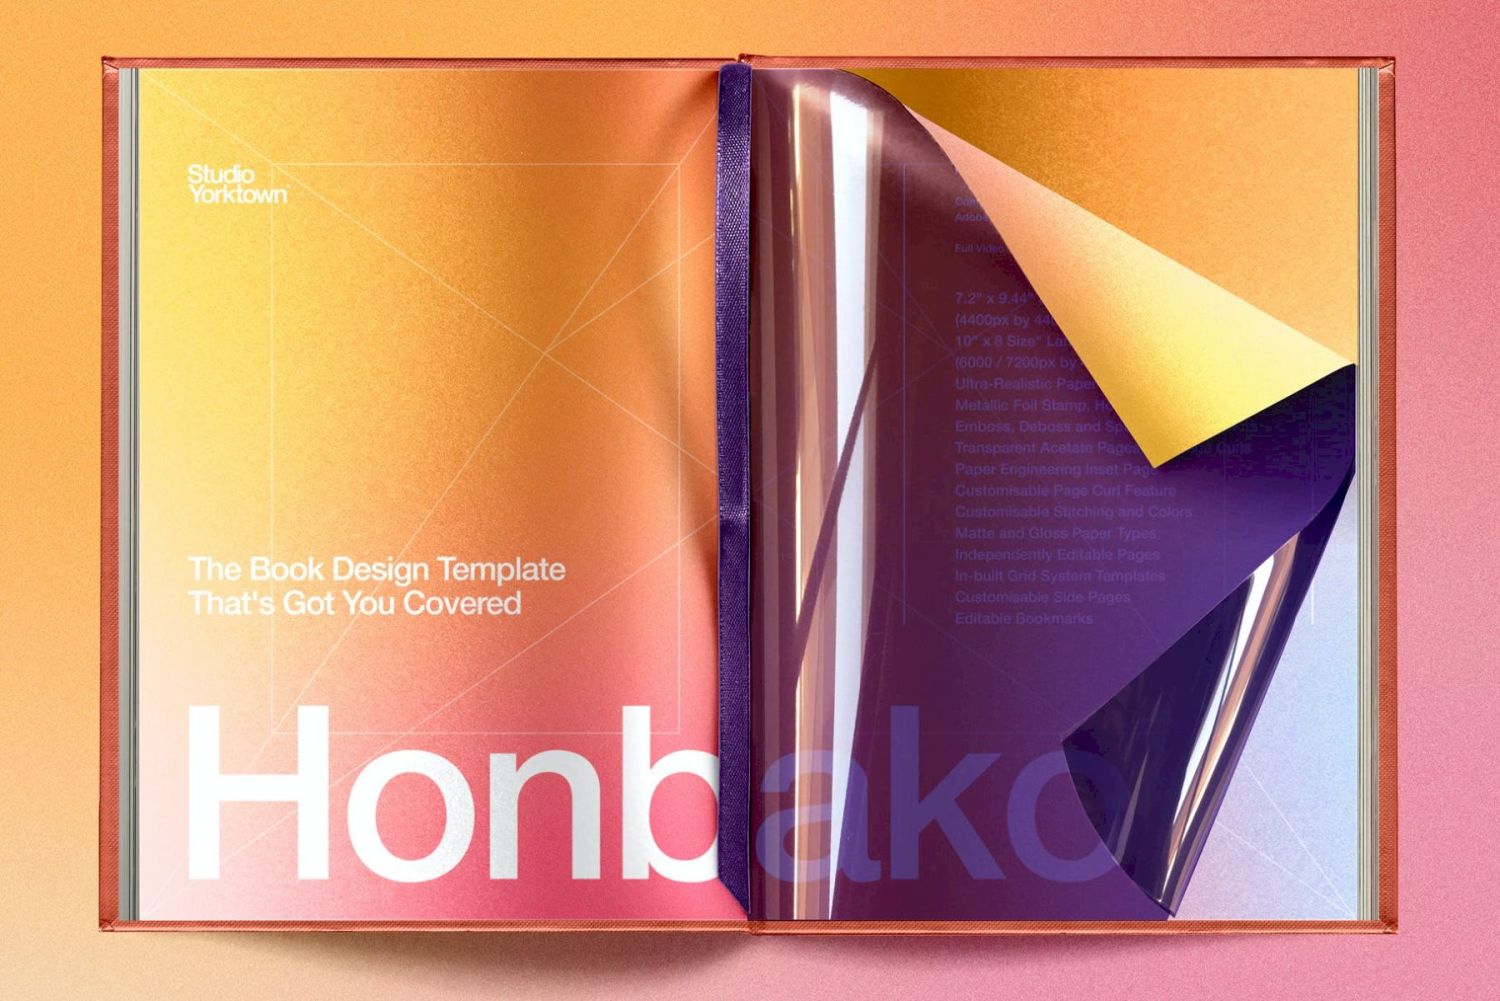 书籍设计样机模板 Honbako Book Design Template插图